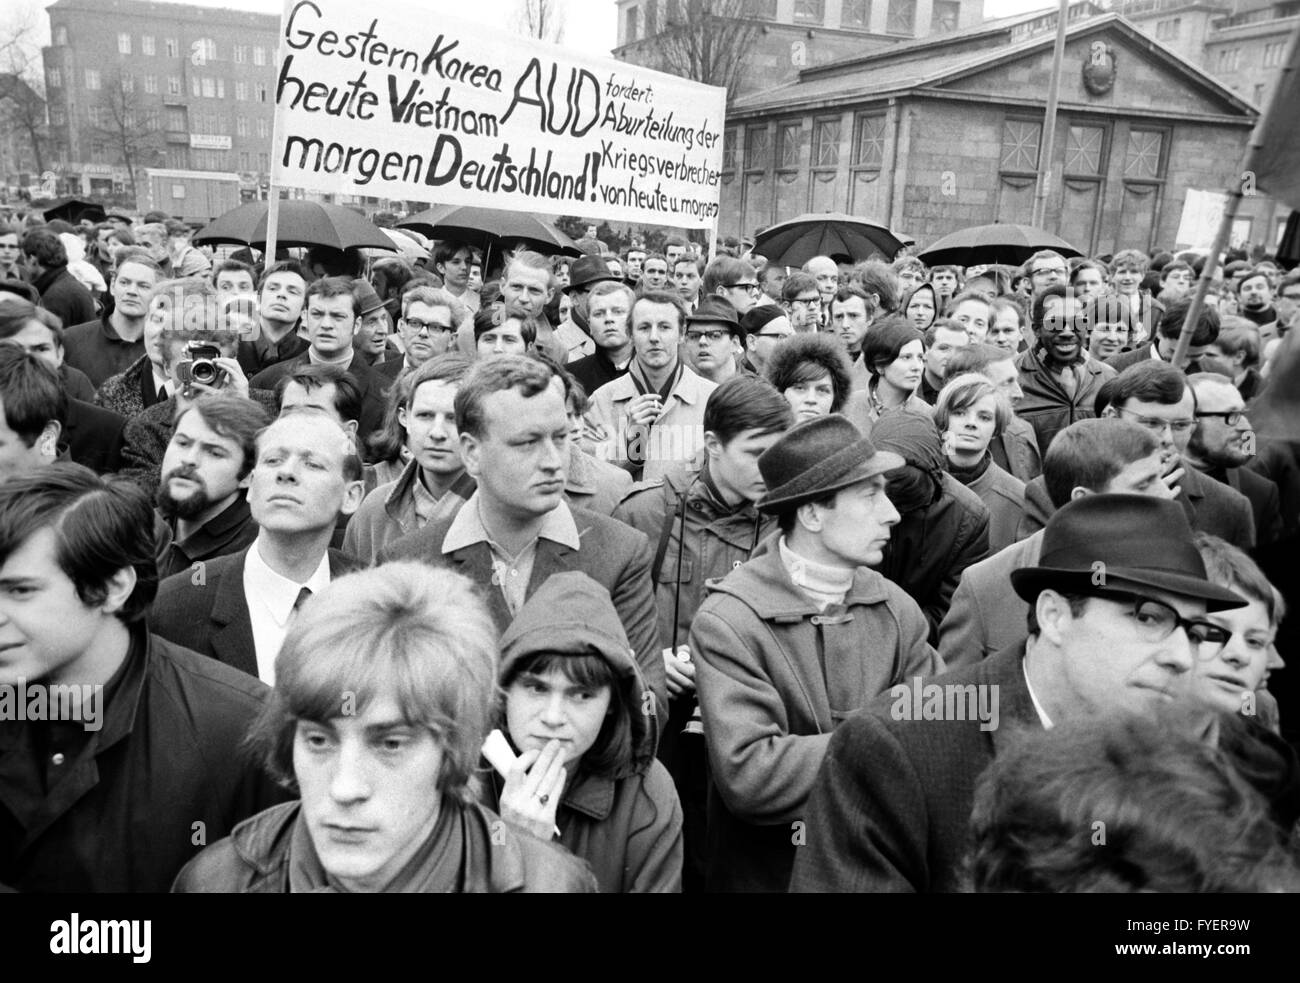 Un groupe d'Action 'groupe d'Allemands avec une bannière. Autour de 1 000 personnes se sont rassemblées à Wittenbergplatz à Berlin pour manifester contre la guerre du Vietnam le 23 mars 1968. Banque D'Images